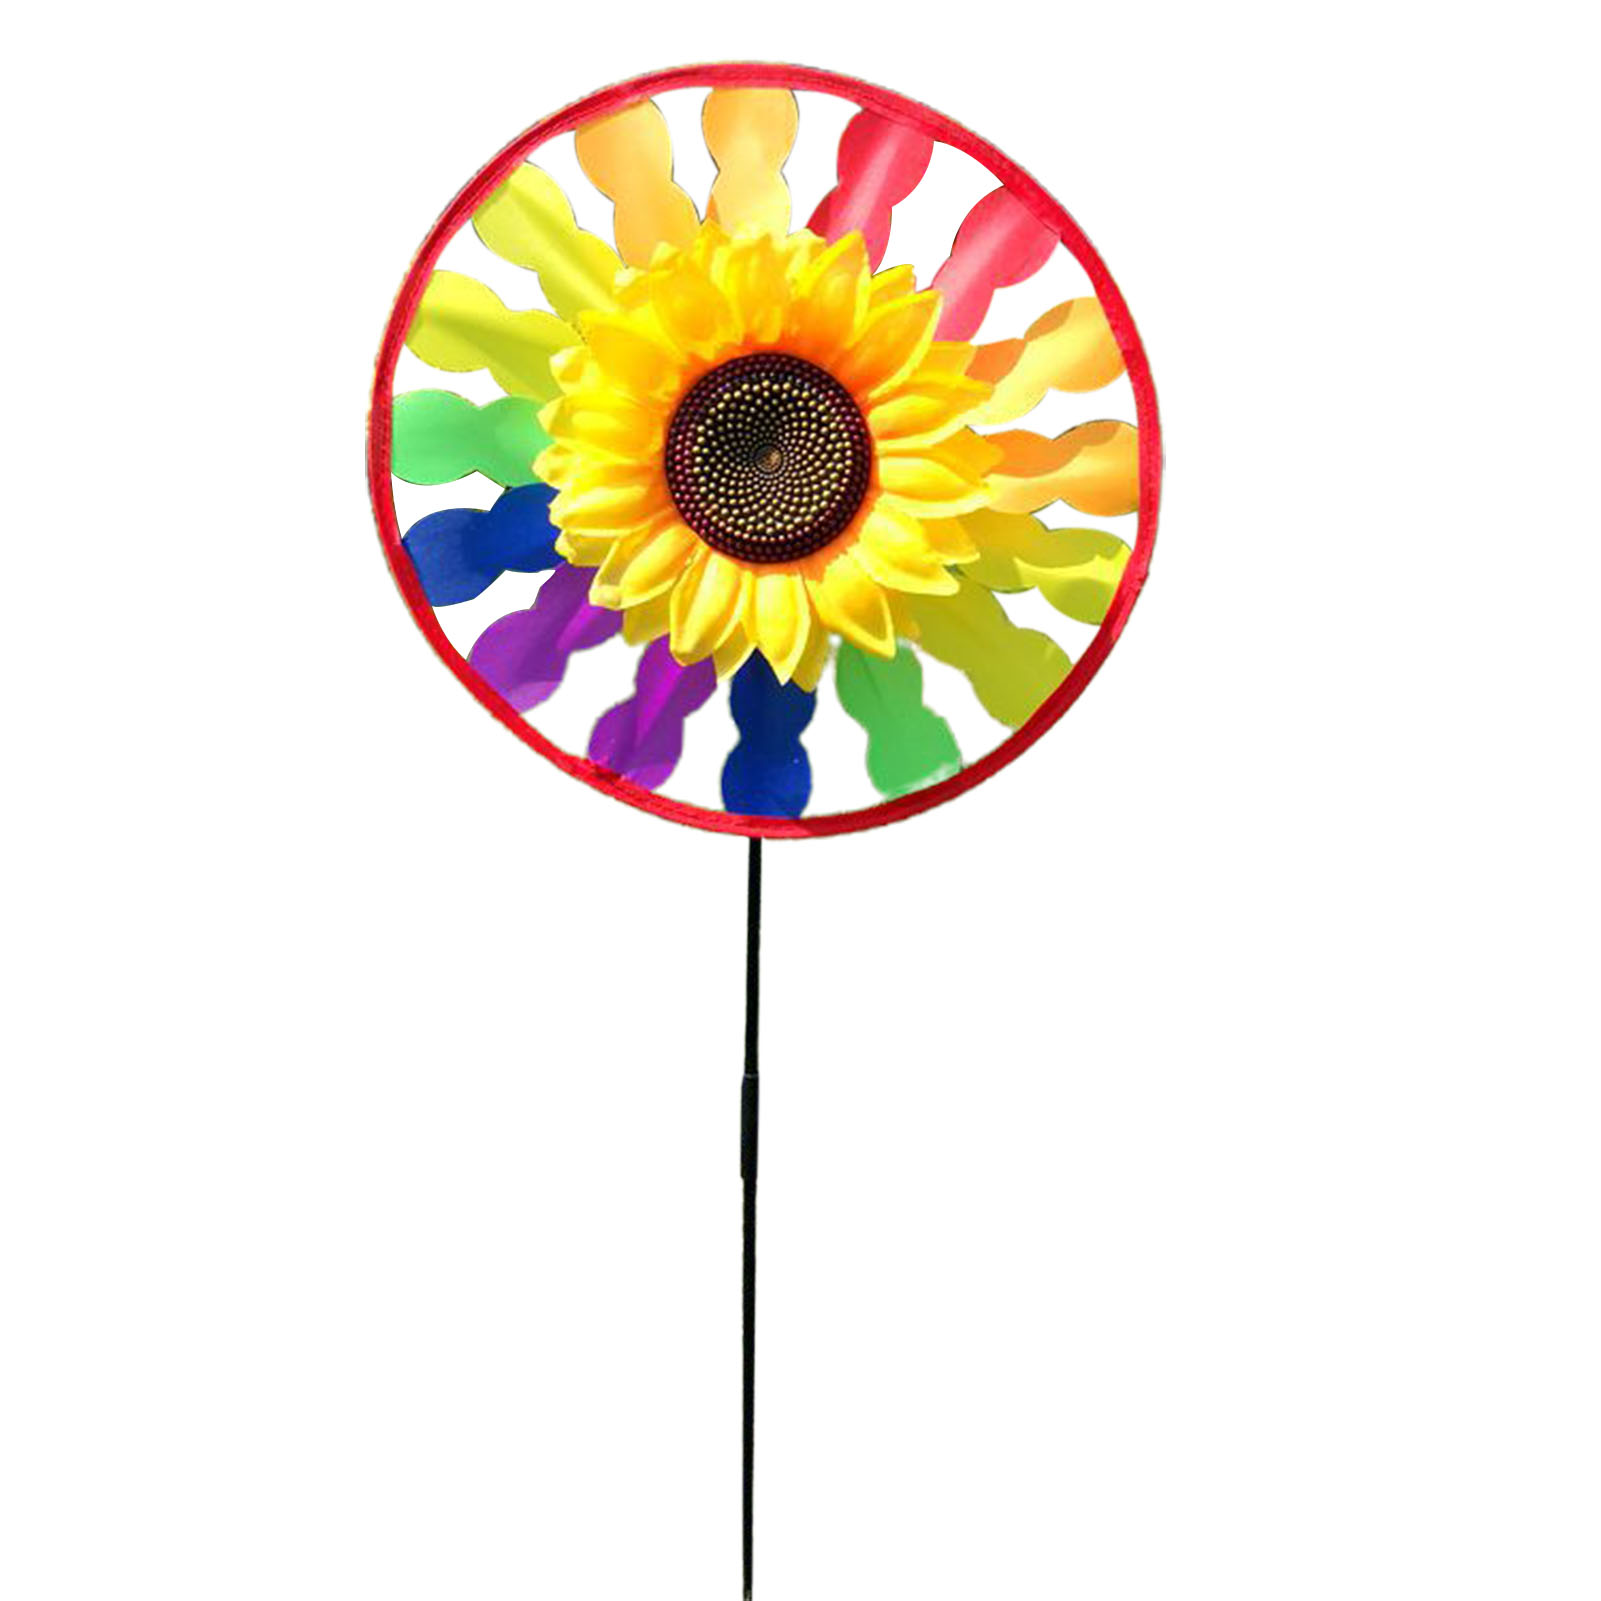 ของเล่นวงล้อรูปทรงดอกไม้ชั้นเดียวรอบเด็ก Sunflower Wind Spinner เครื่องประดับสำหรับเด็ก